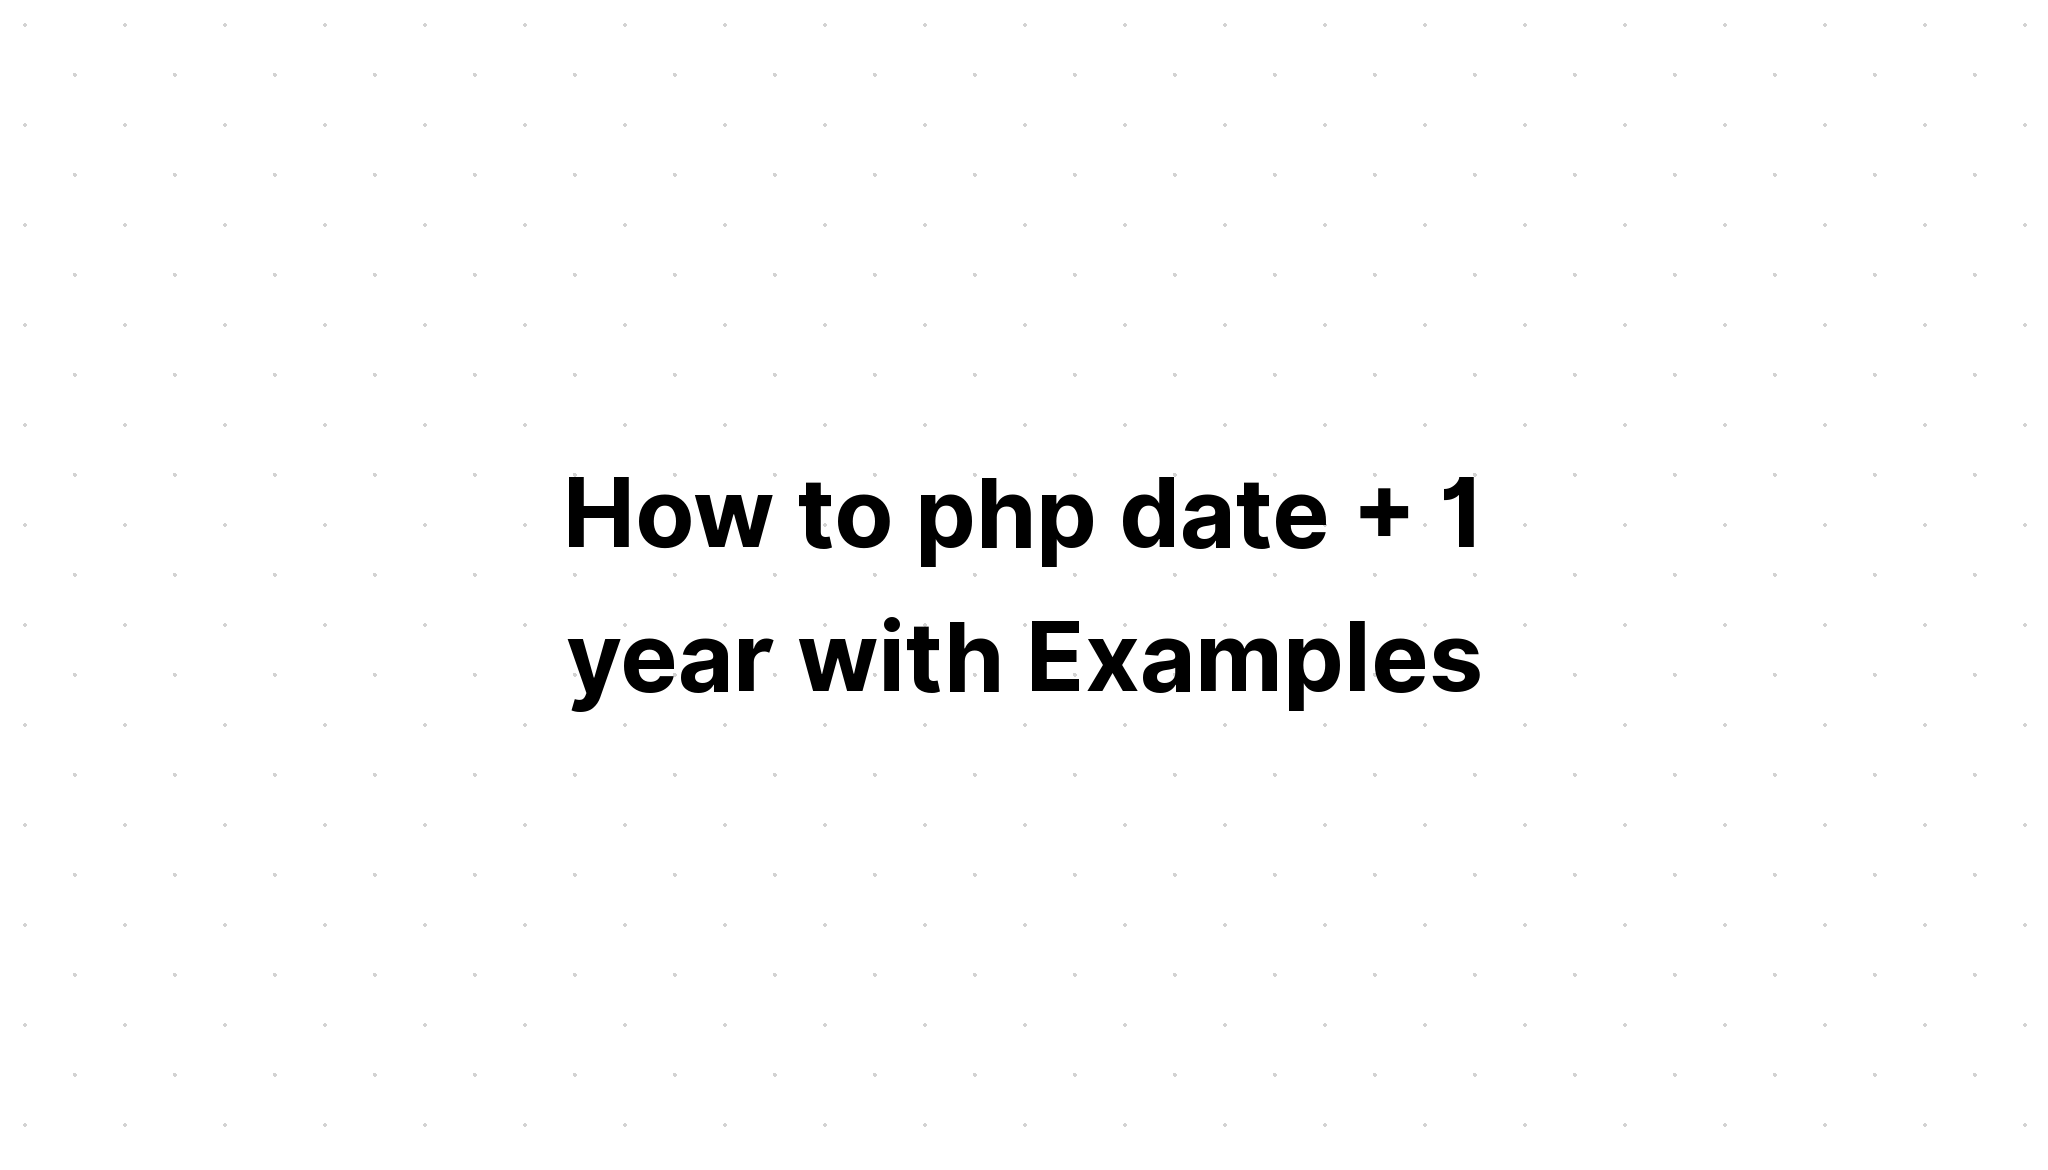 Cách php ngày + 1 năm với các ví dụ